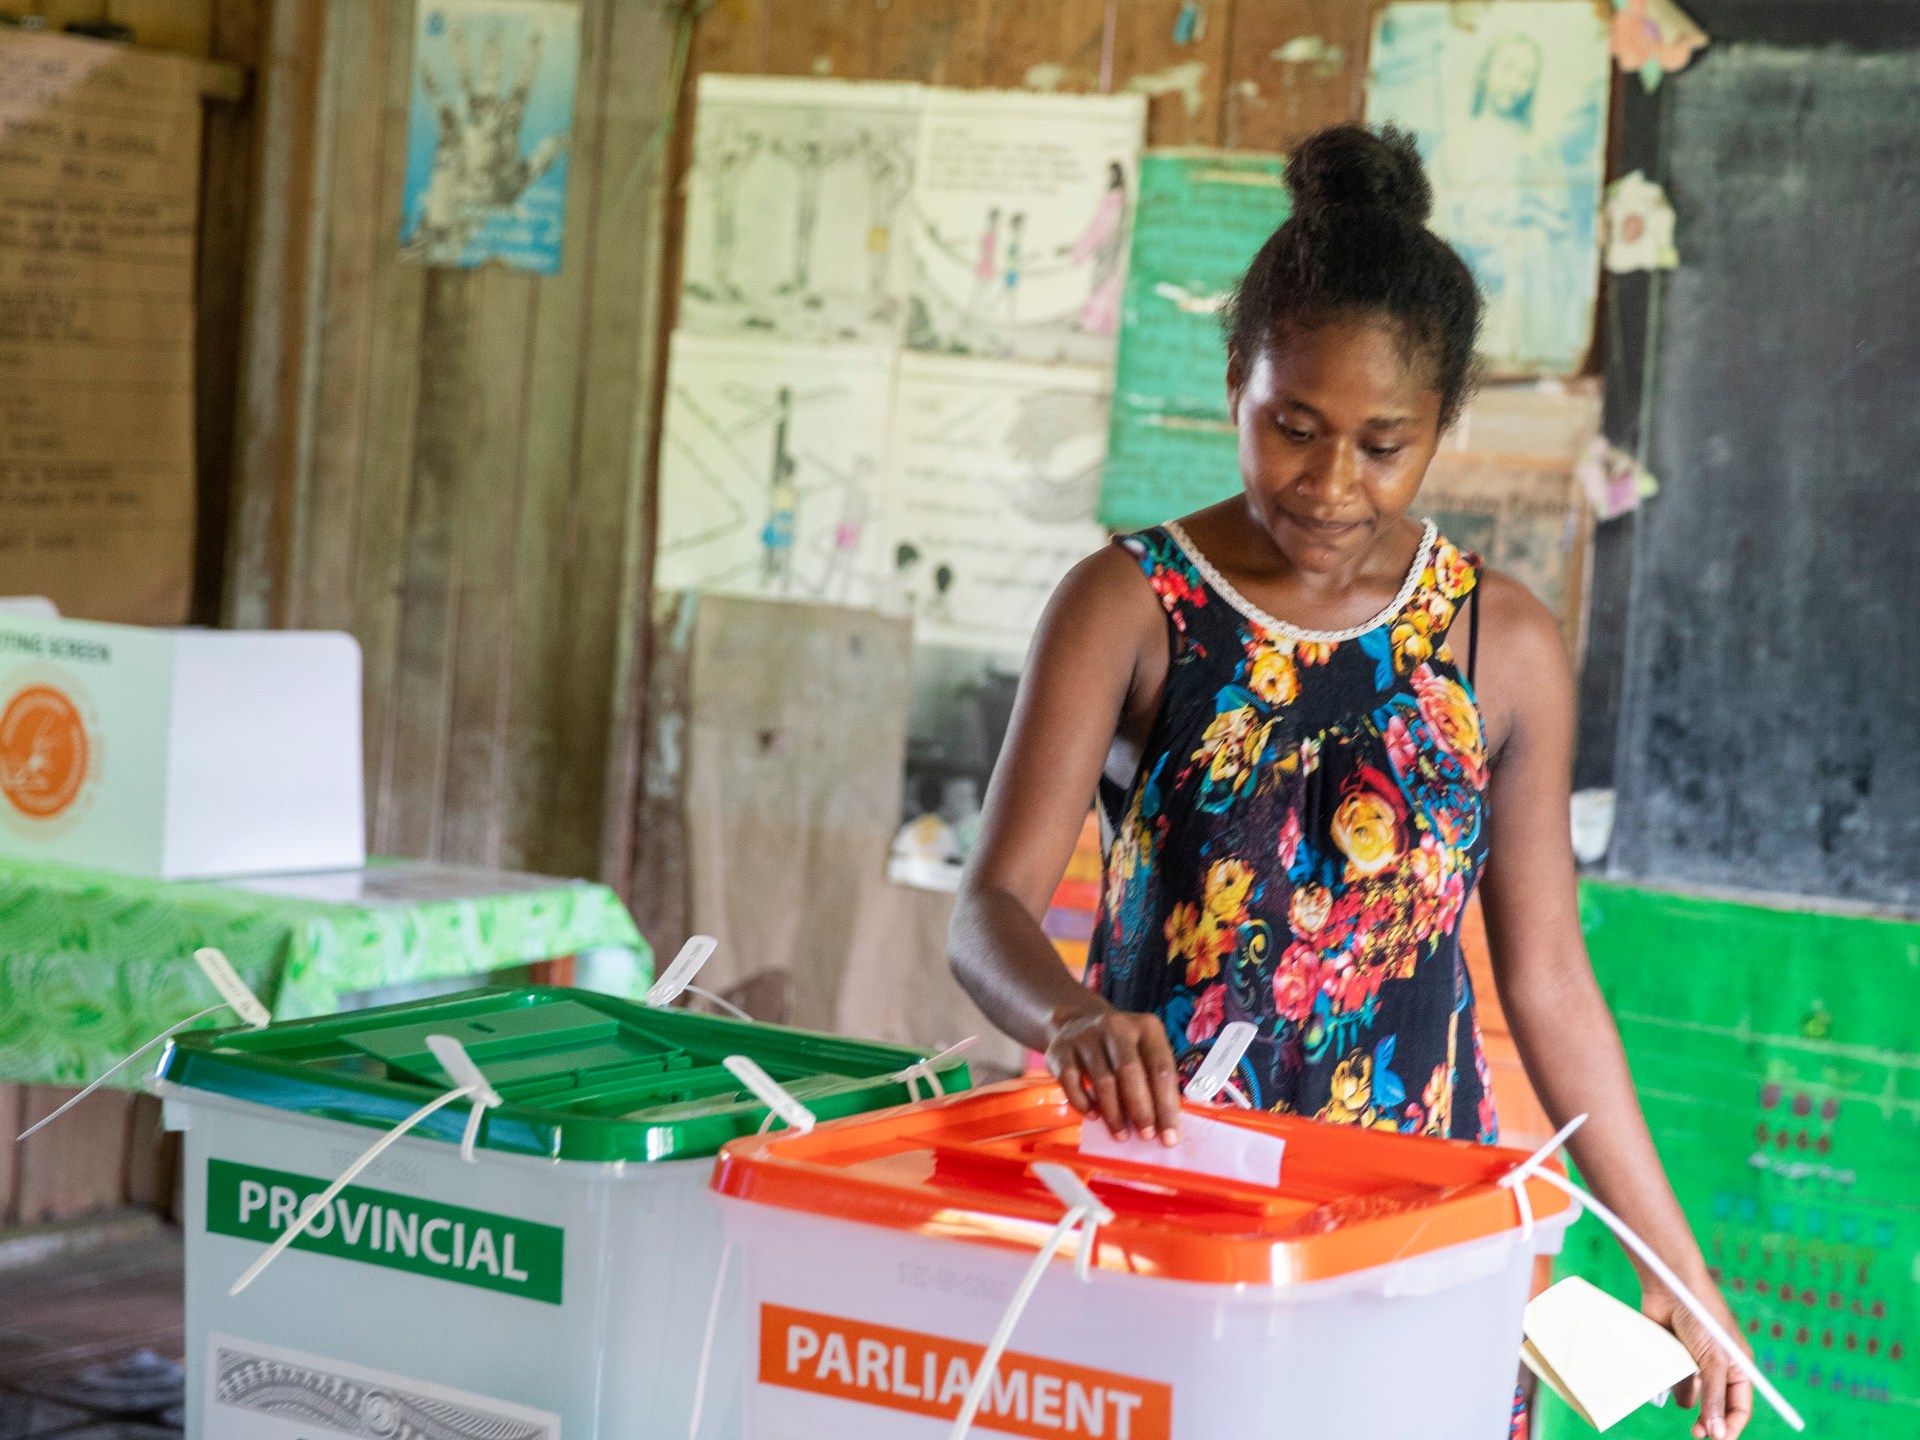 Le Premier ministre pro-chinois des Îles Salomon, Manasseh Sogavare, ne parvient pas à obtenir la majorité |  Actualités électorales